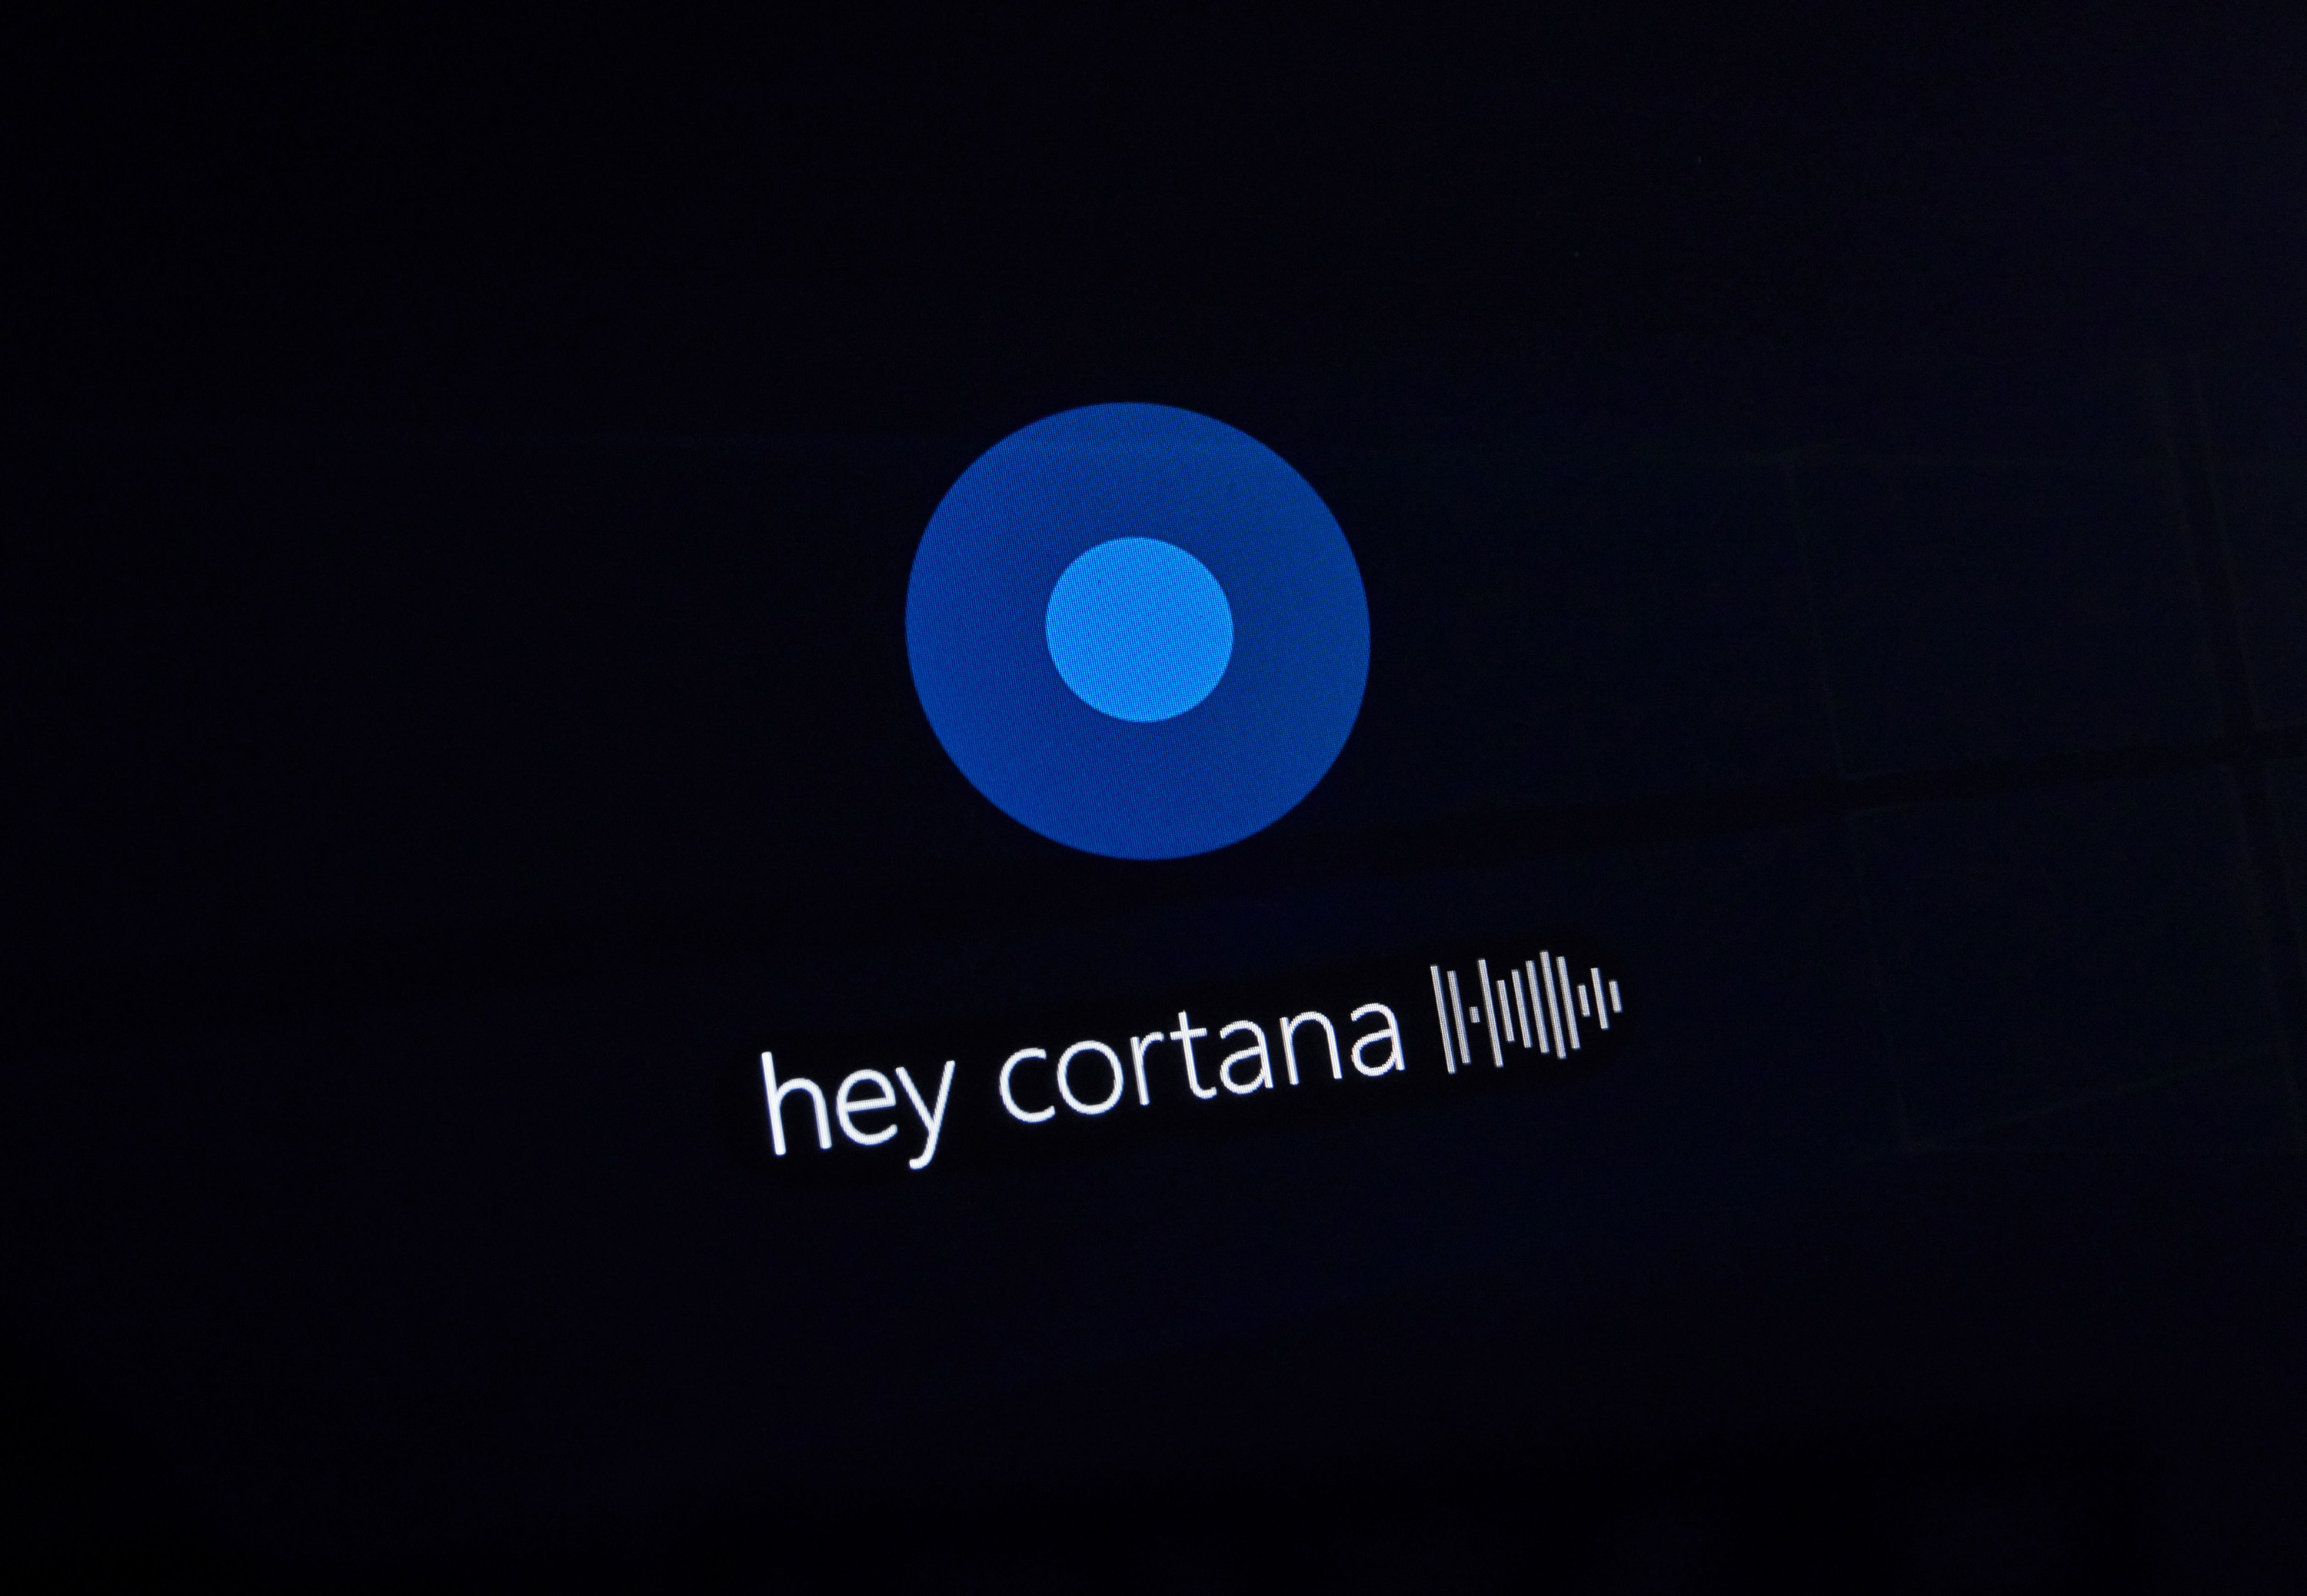 Vous ne devinerez jamais ce que le boss de Microsoft pense vraiment de Cortana (ou peut-être que si...)